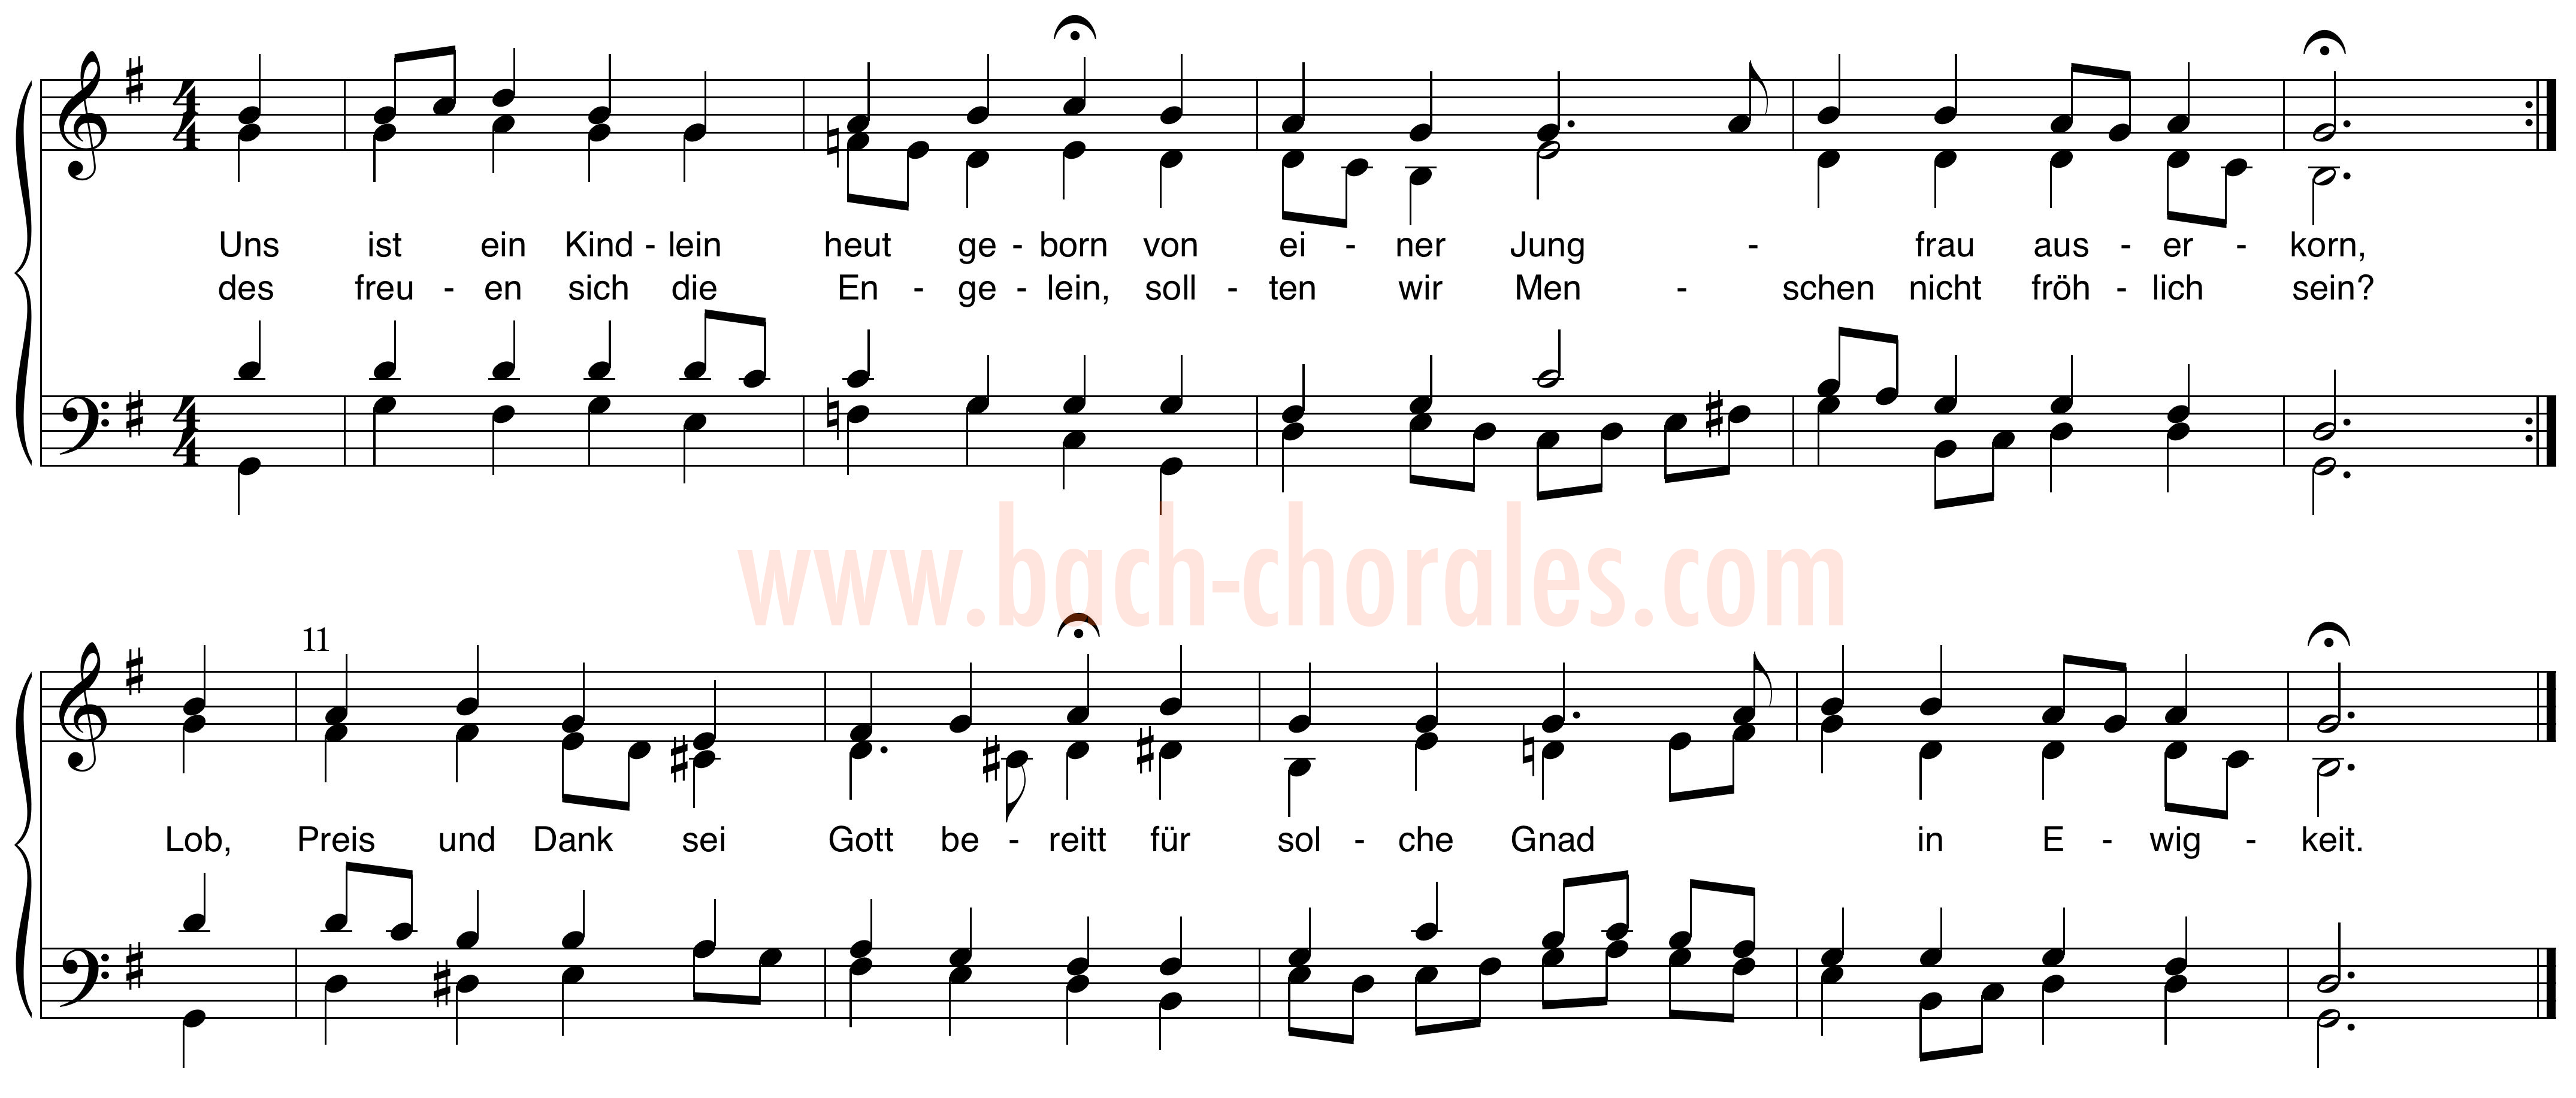 notenbeeld BWV 414 op https://www.bach-chorales.com/